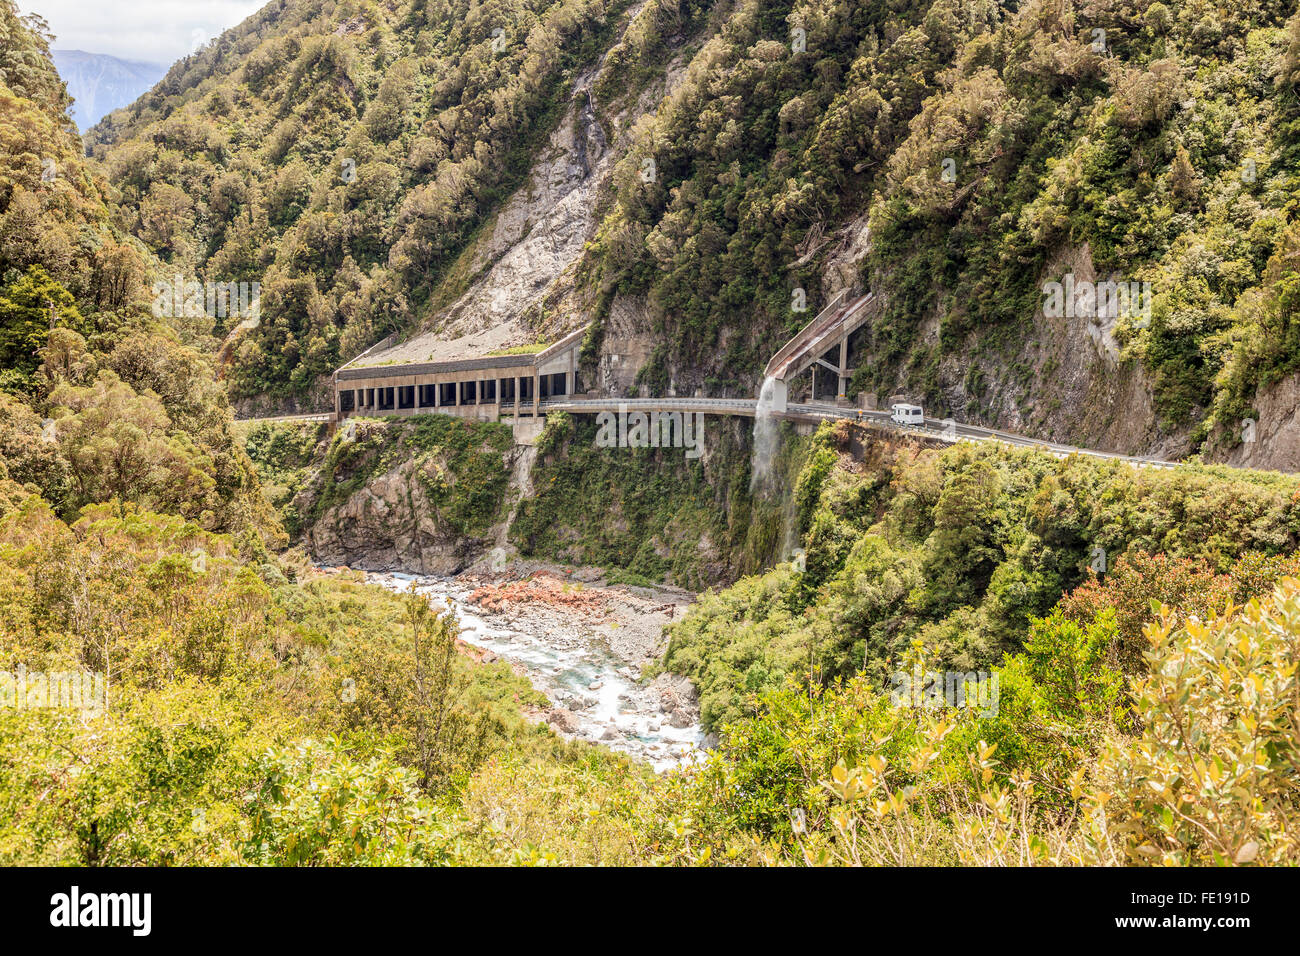 Valanga e rock fall protection struttura in calcestruzzo, Alpine autostrada ,Arthur's Pass,Isola del Sud,Nuova Zelanda Foto Stock